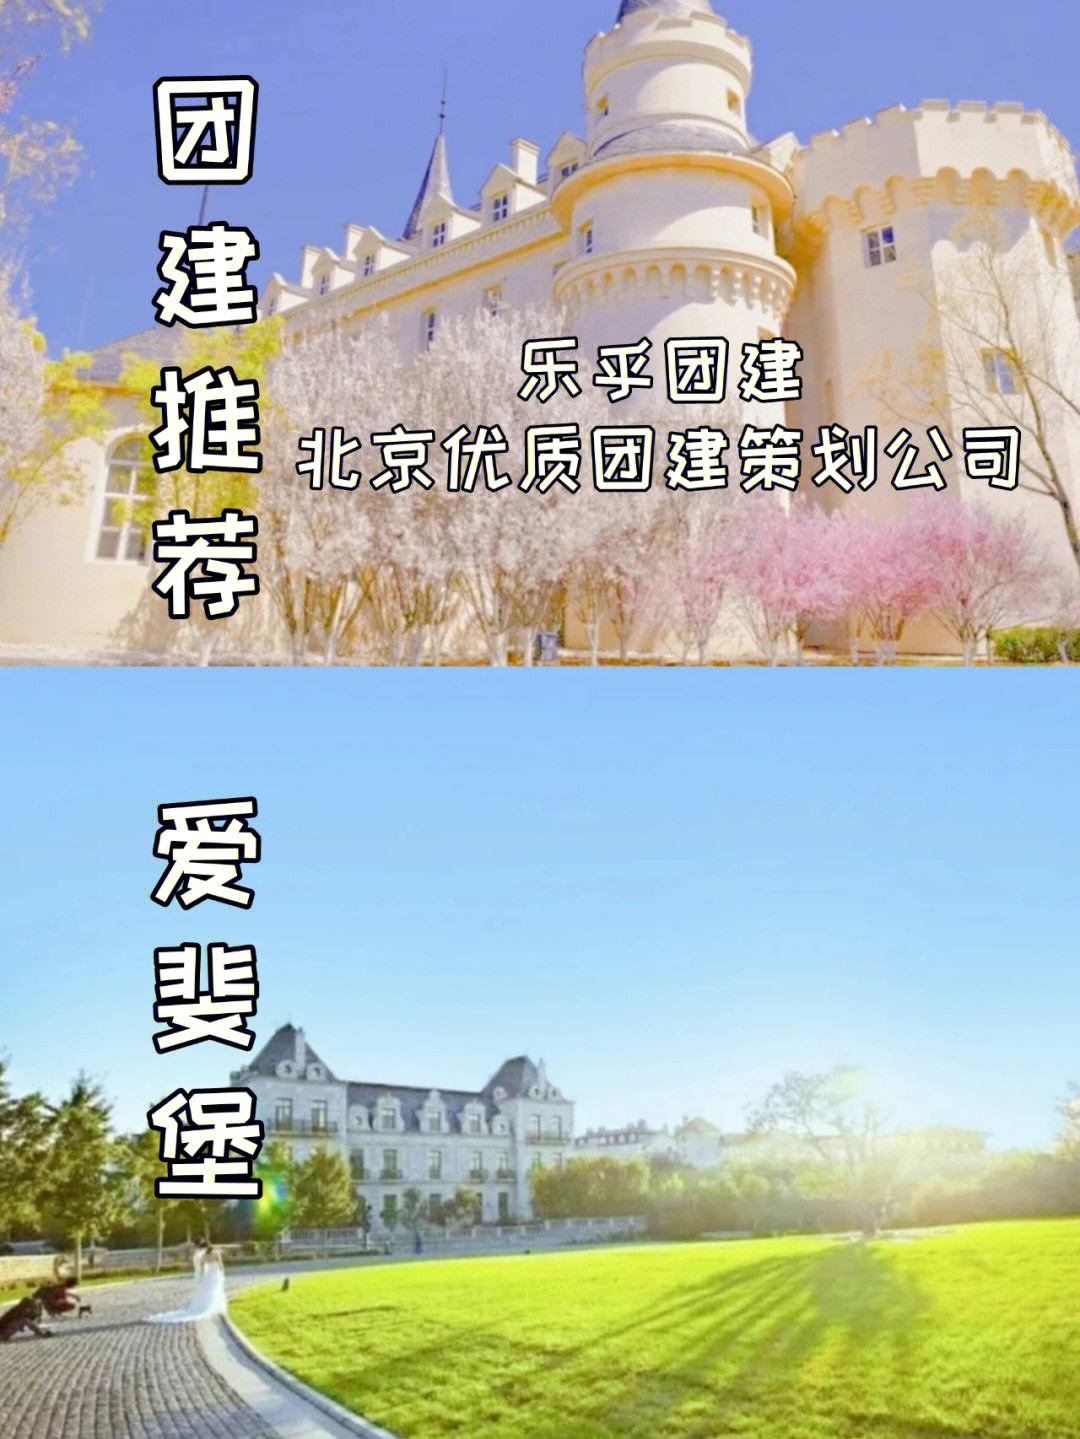 北京团建推荐魔法城堡可团建游玩拍照